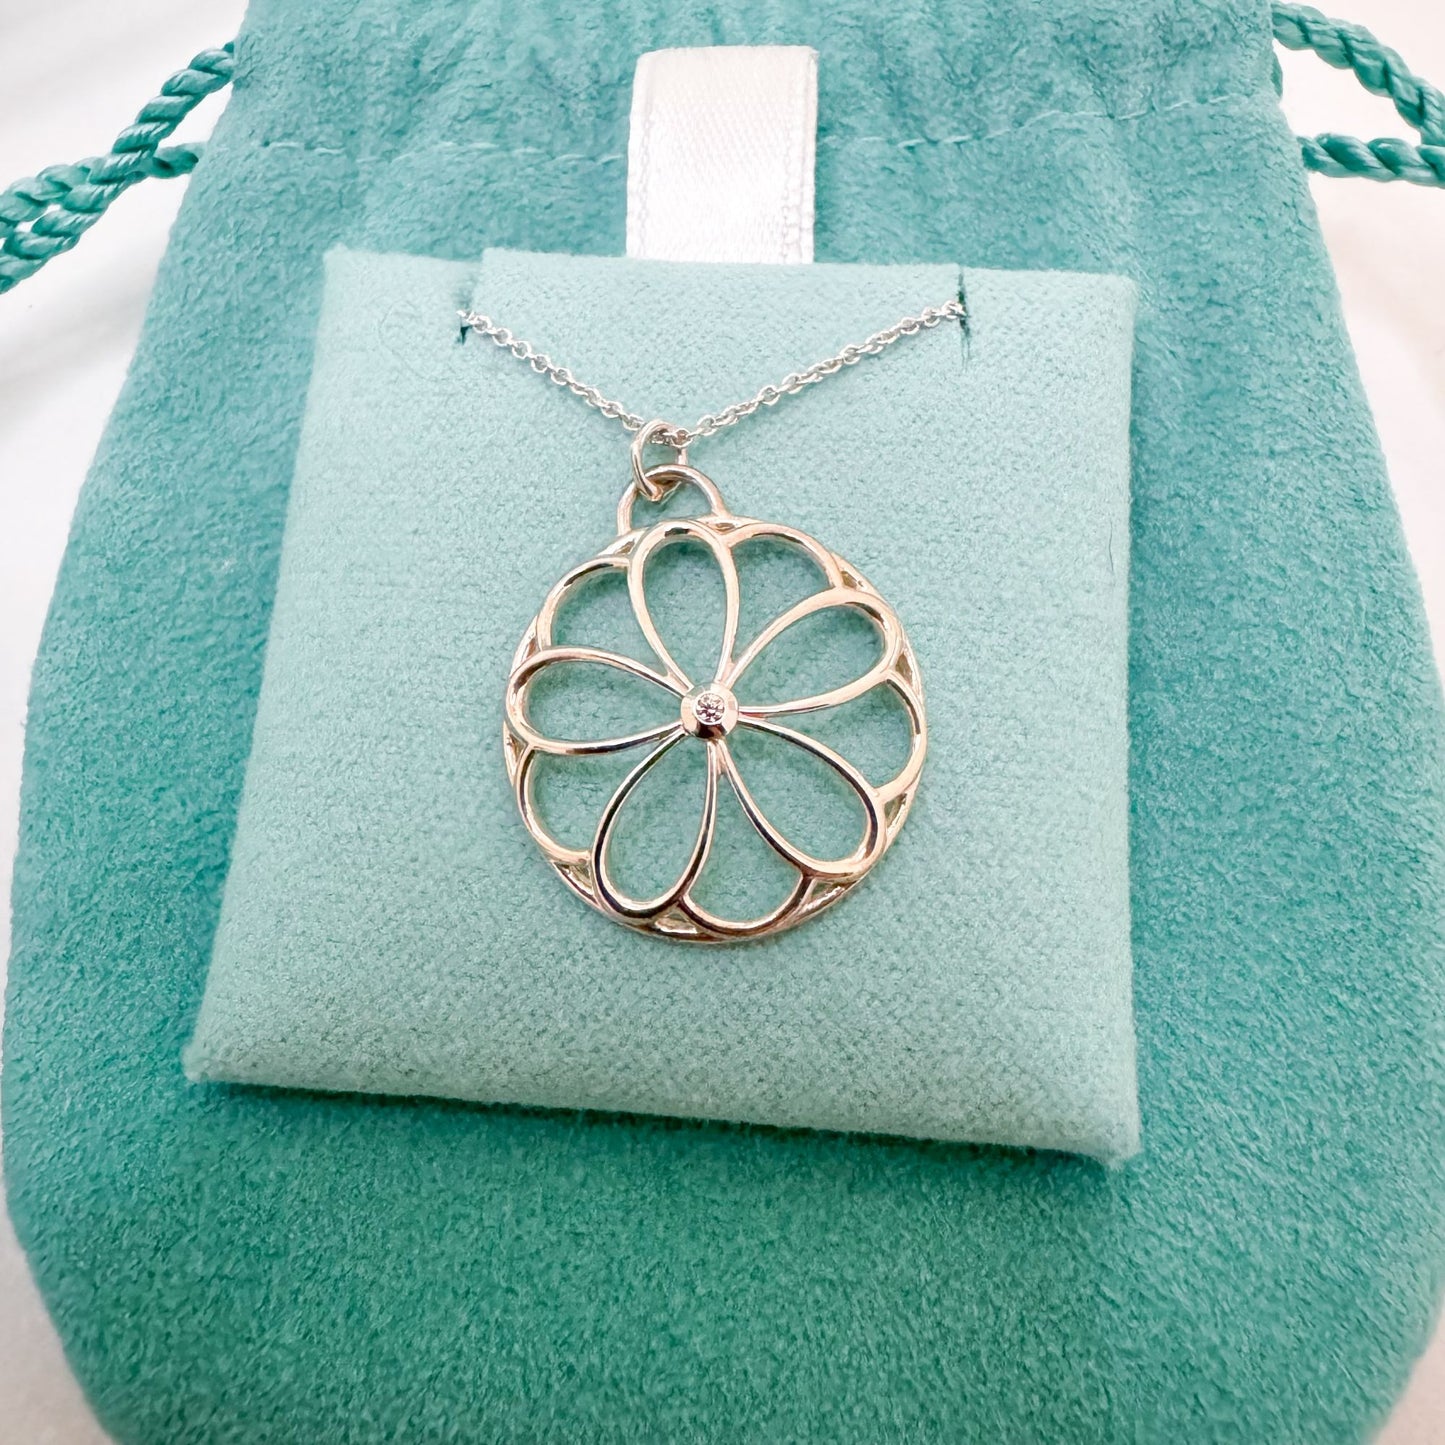 Tiffany & Co. Garden Flower Diamond Necklace in Sterling Silver